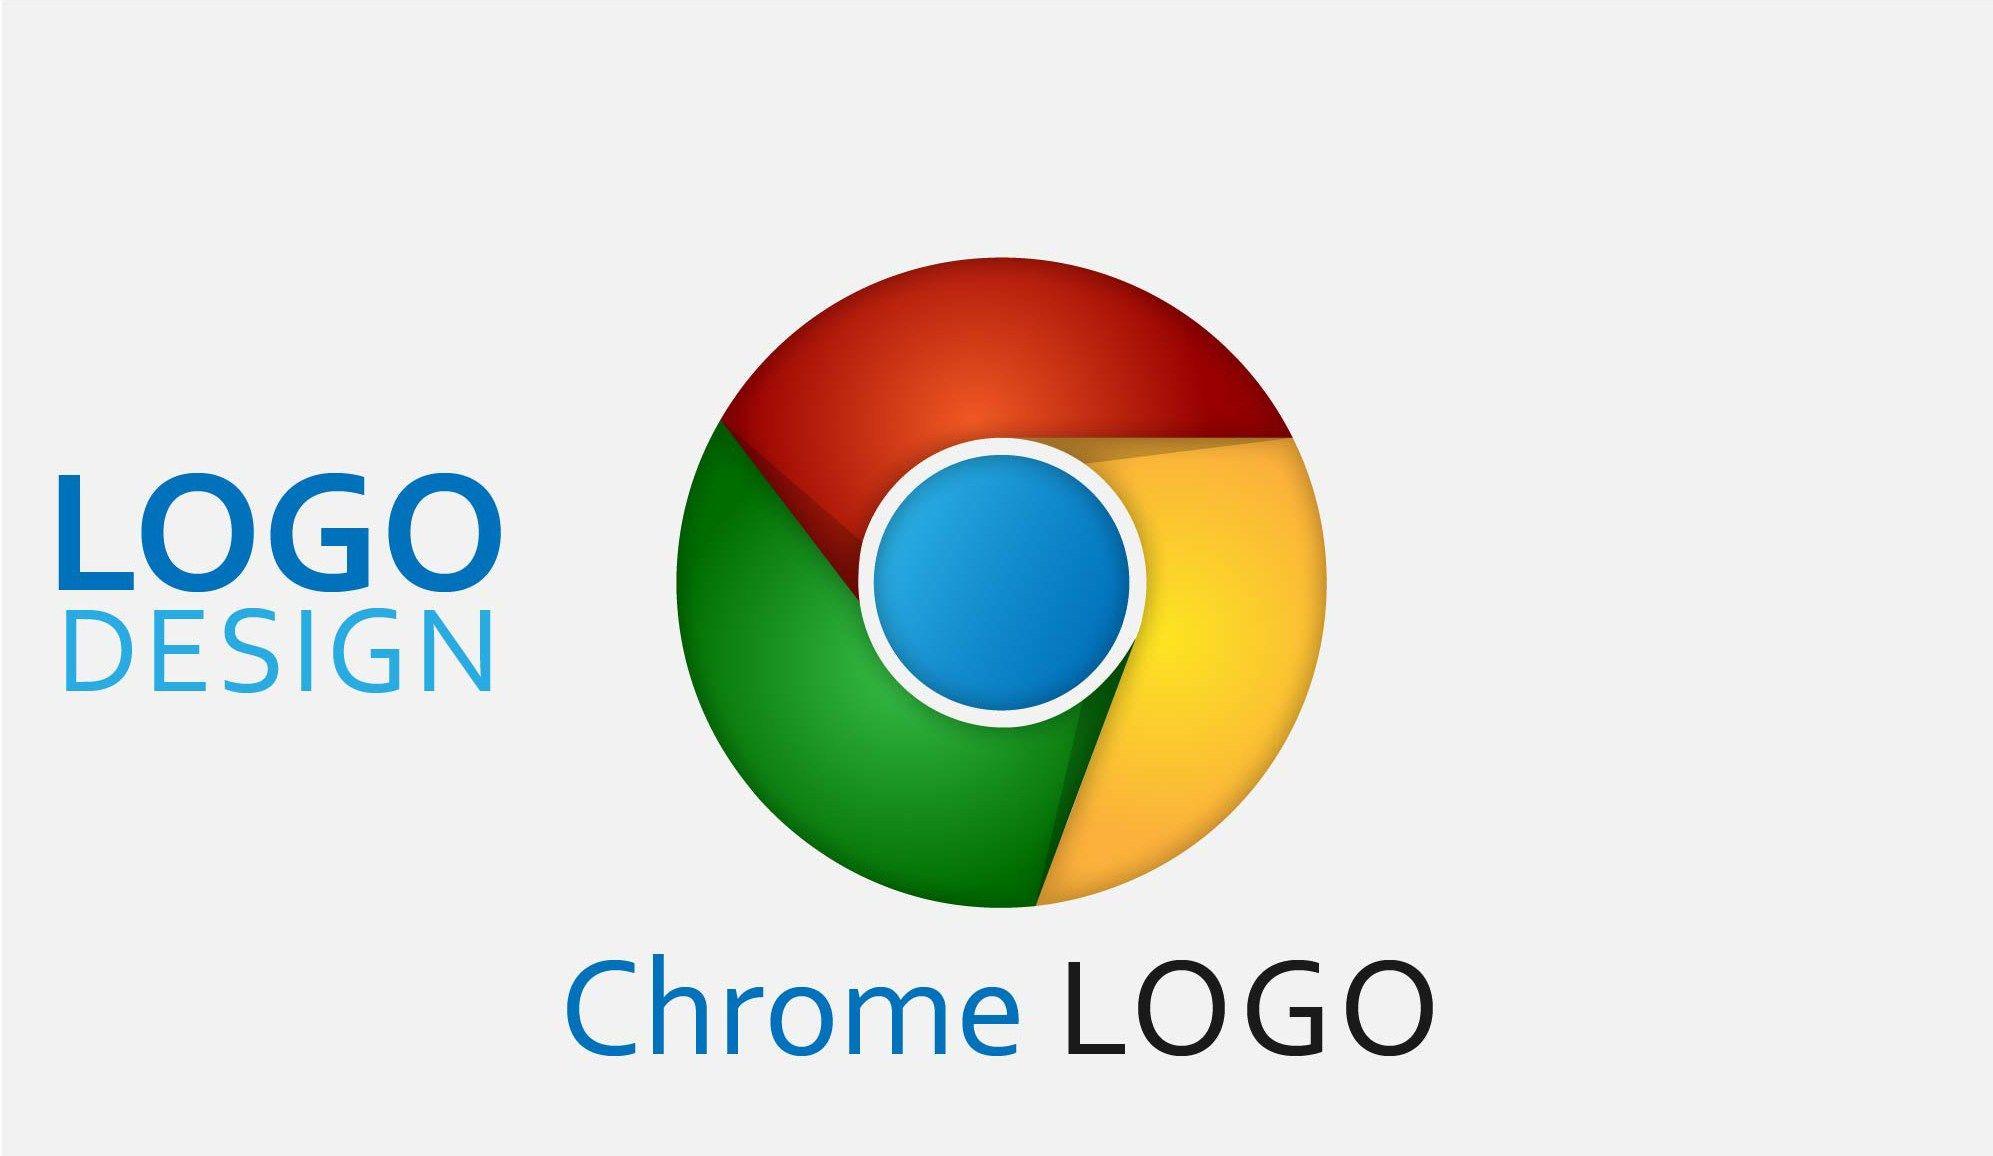 All Google Chrome Logo - How to Design Google Chrome Logo In Illustrator?